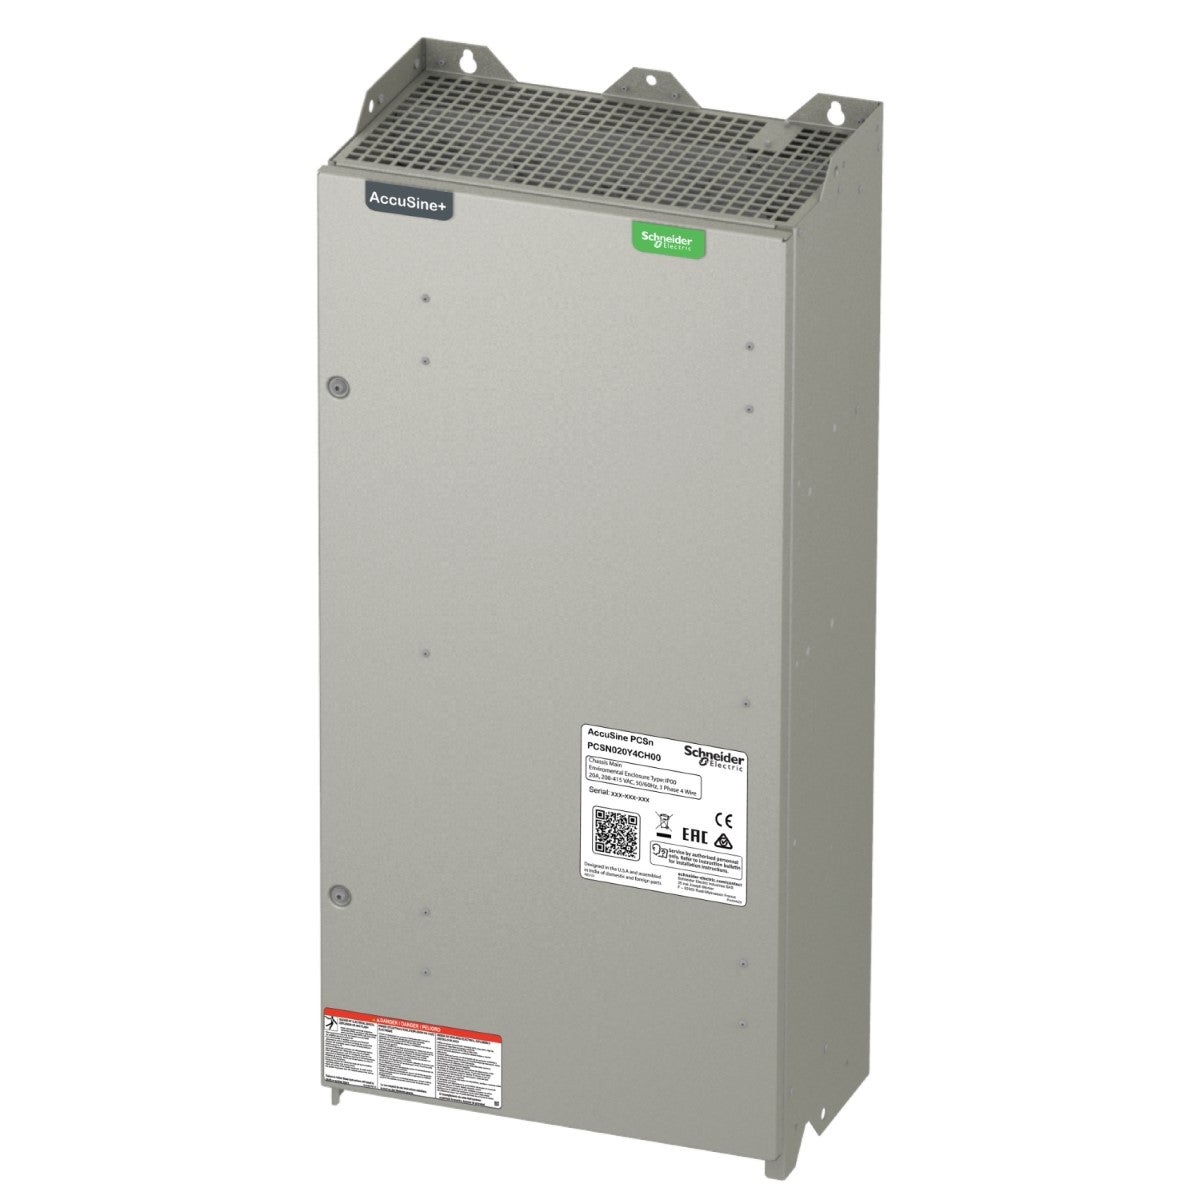 PCSN active harmonic filter 30 amp 208-415 VAC - wall-mounted, IP00 enclosure